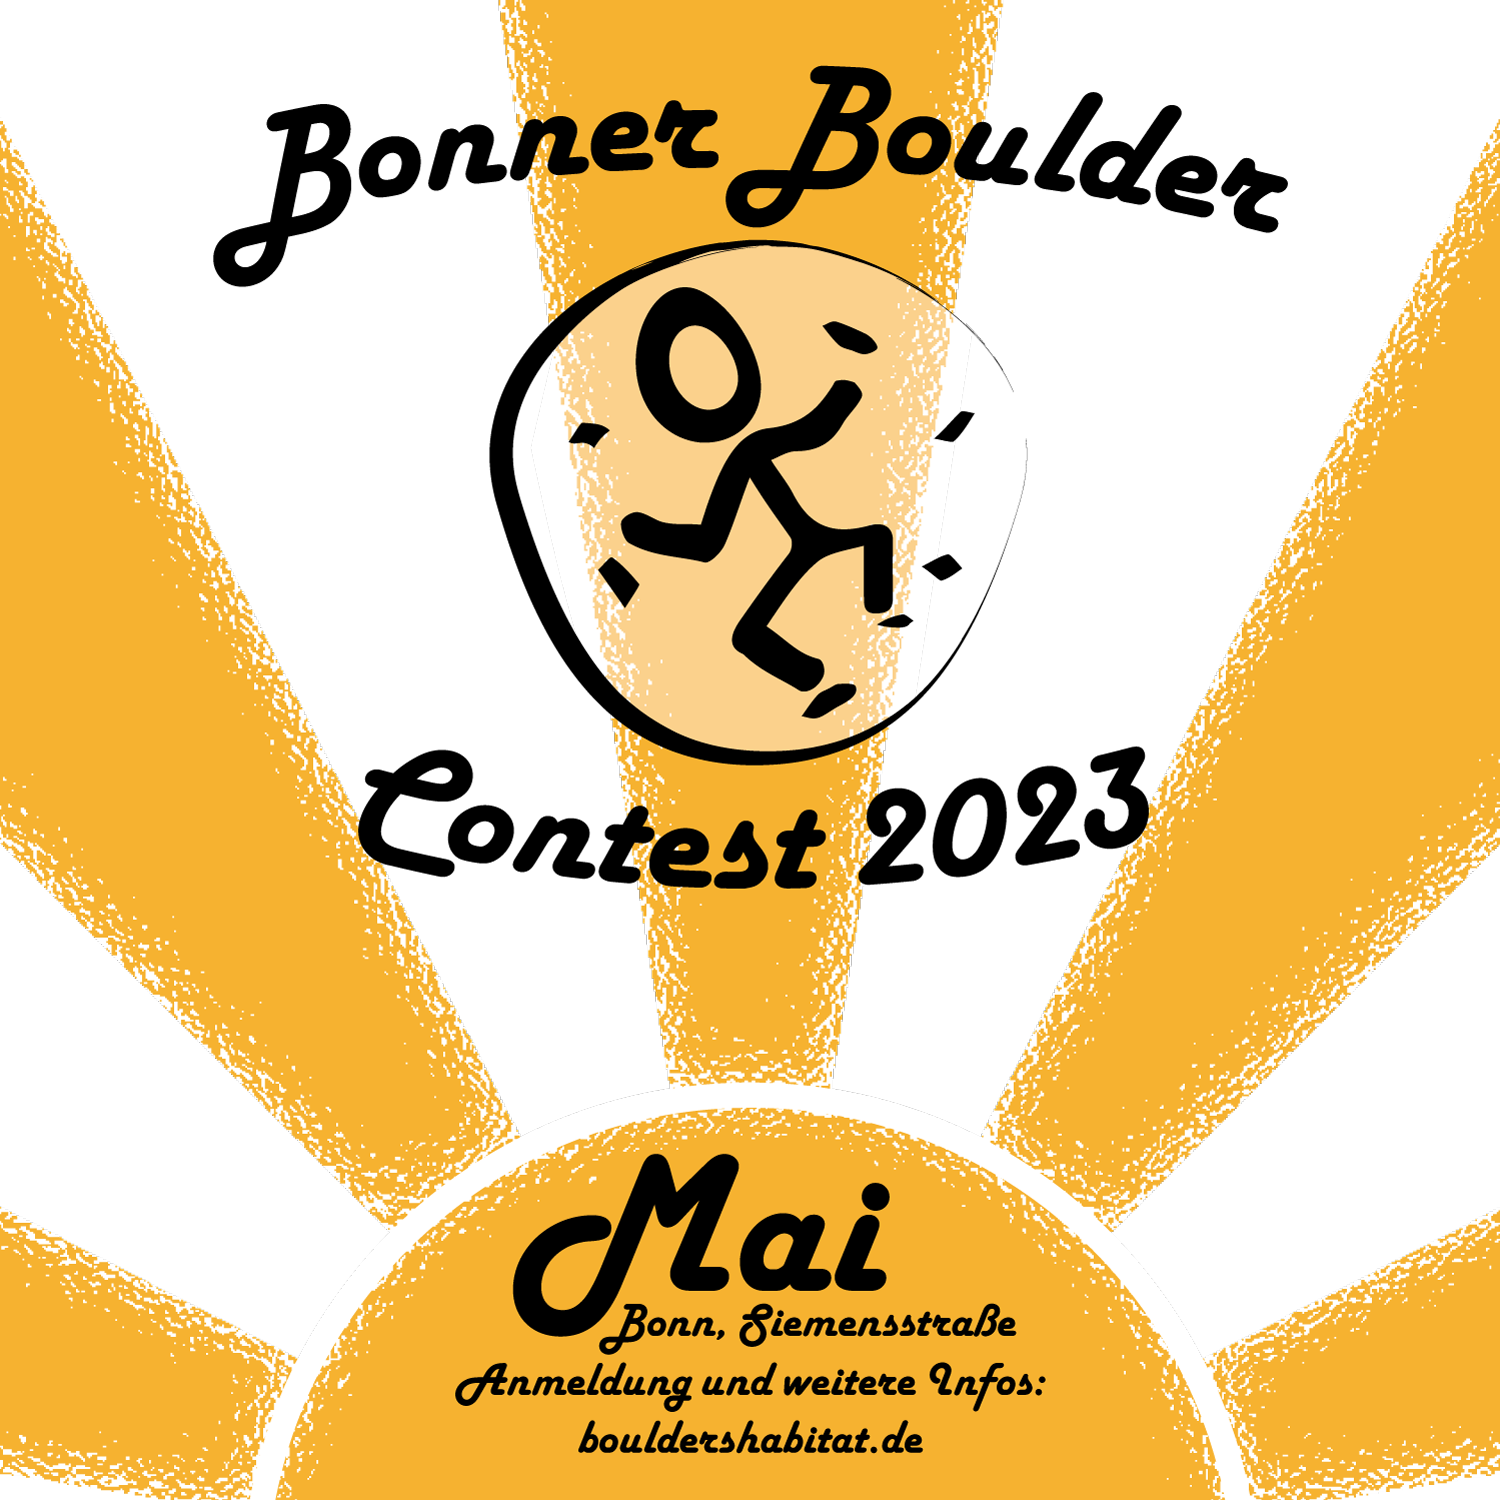 Poster for Bonner Boulder Contest 2023